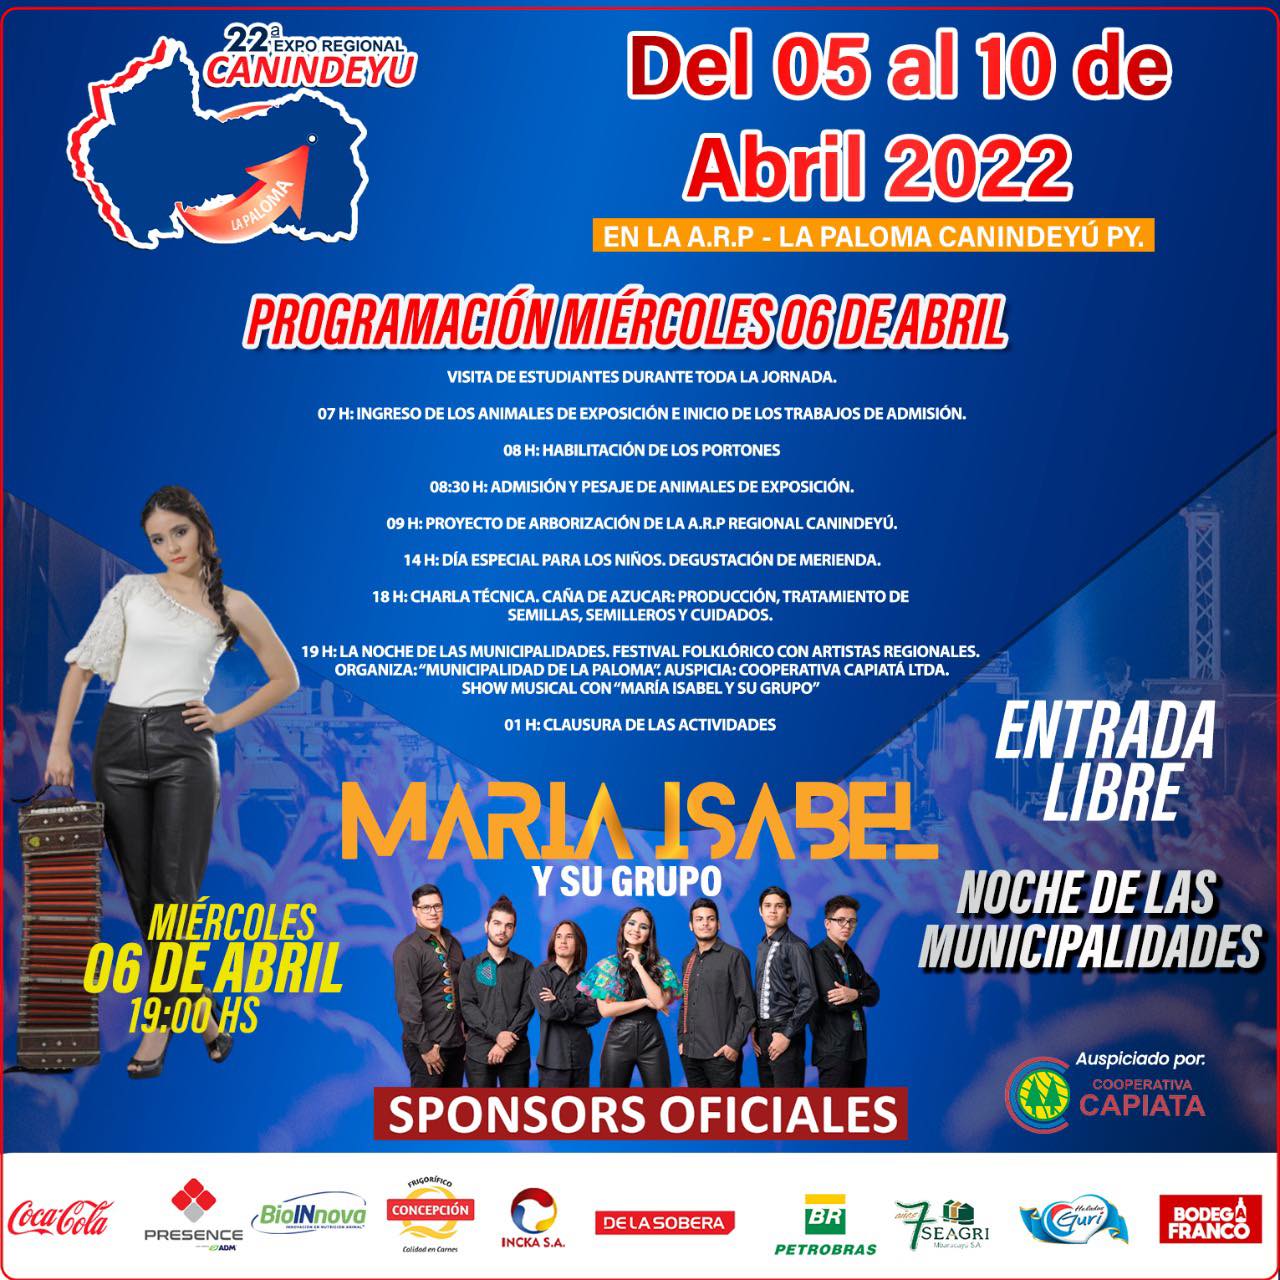 Expo Regional Canindeyú. Programación – Miércoles 06 de abril